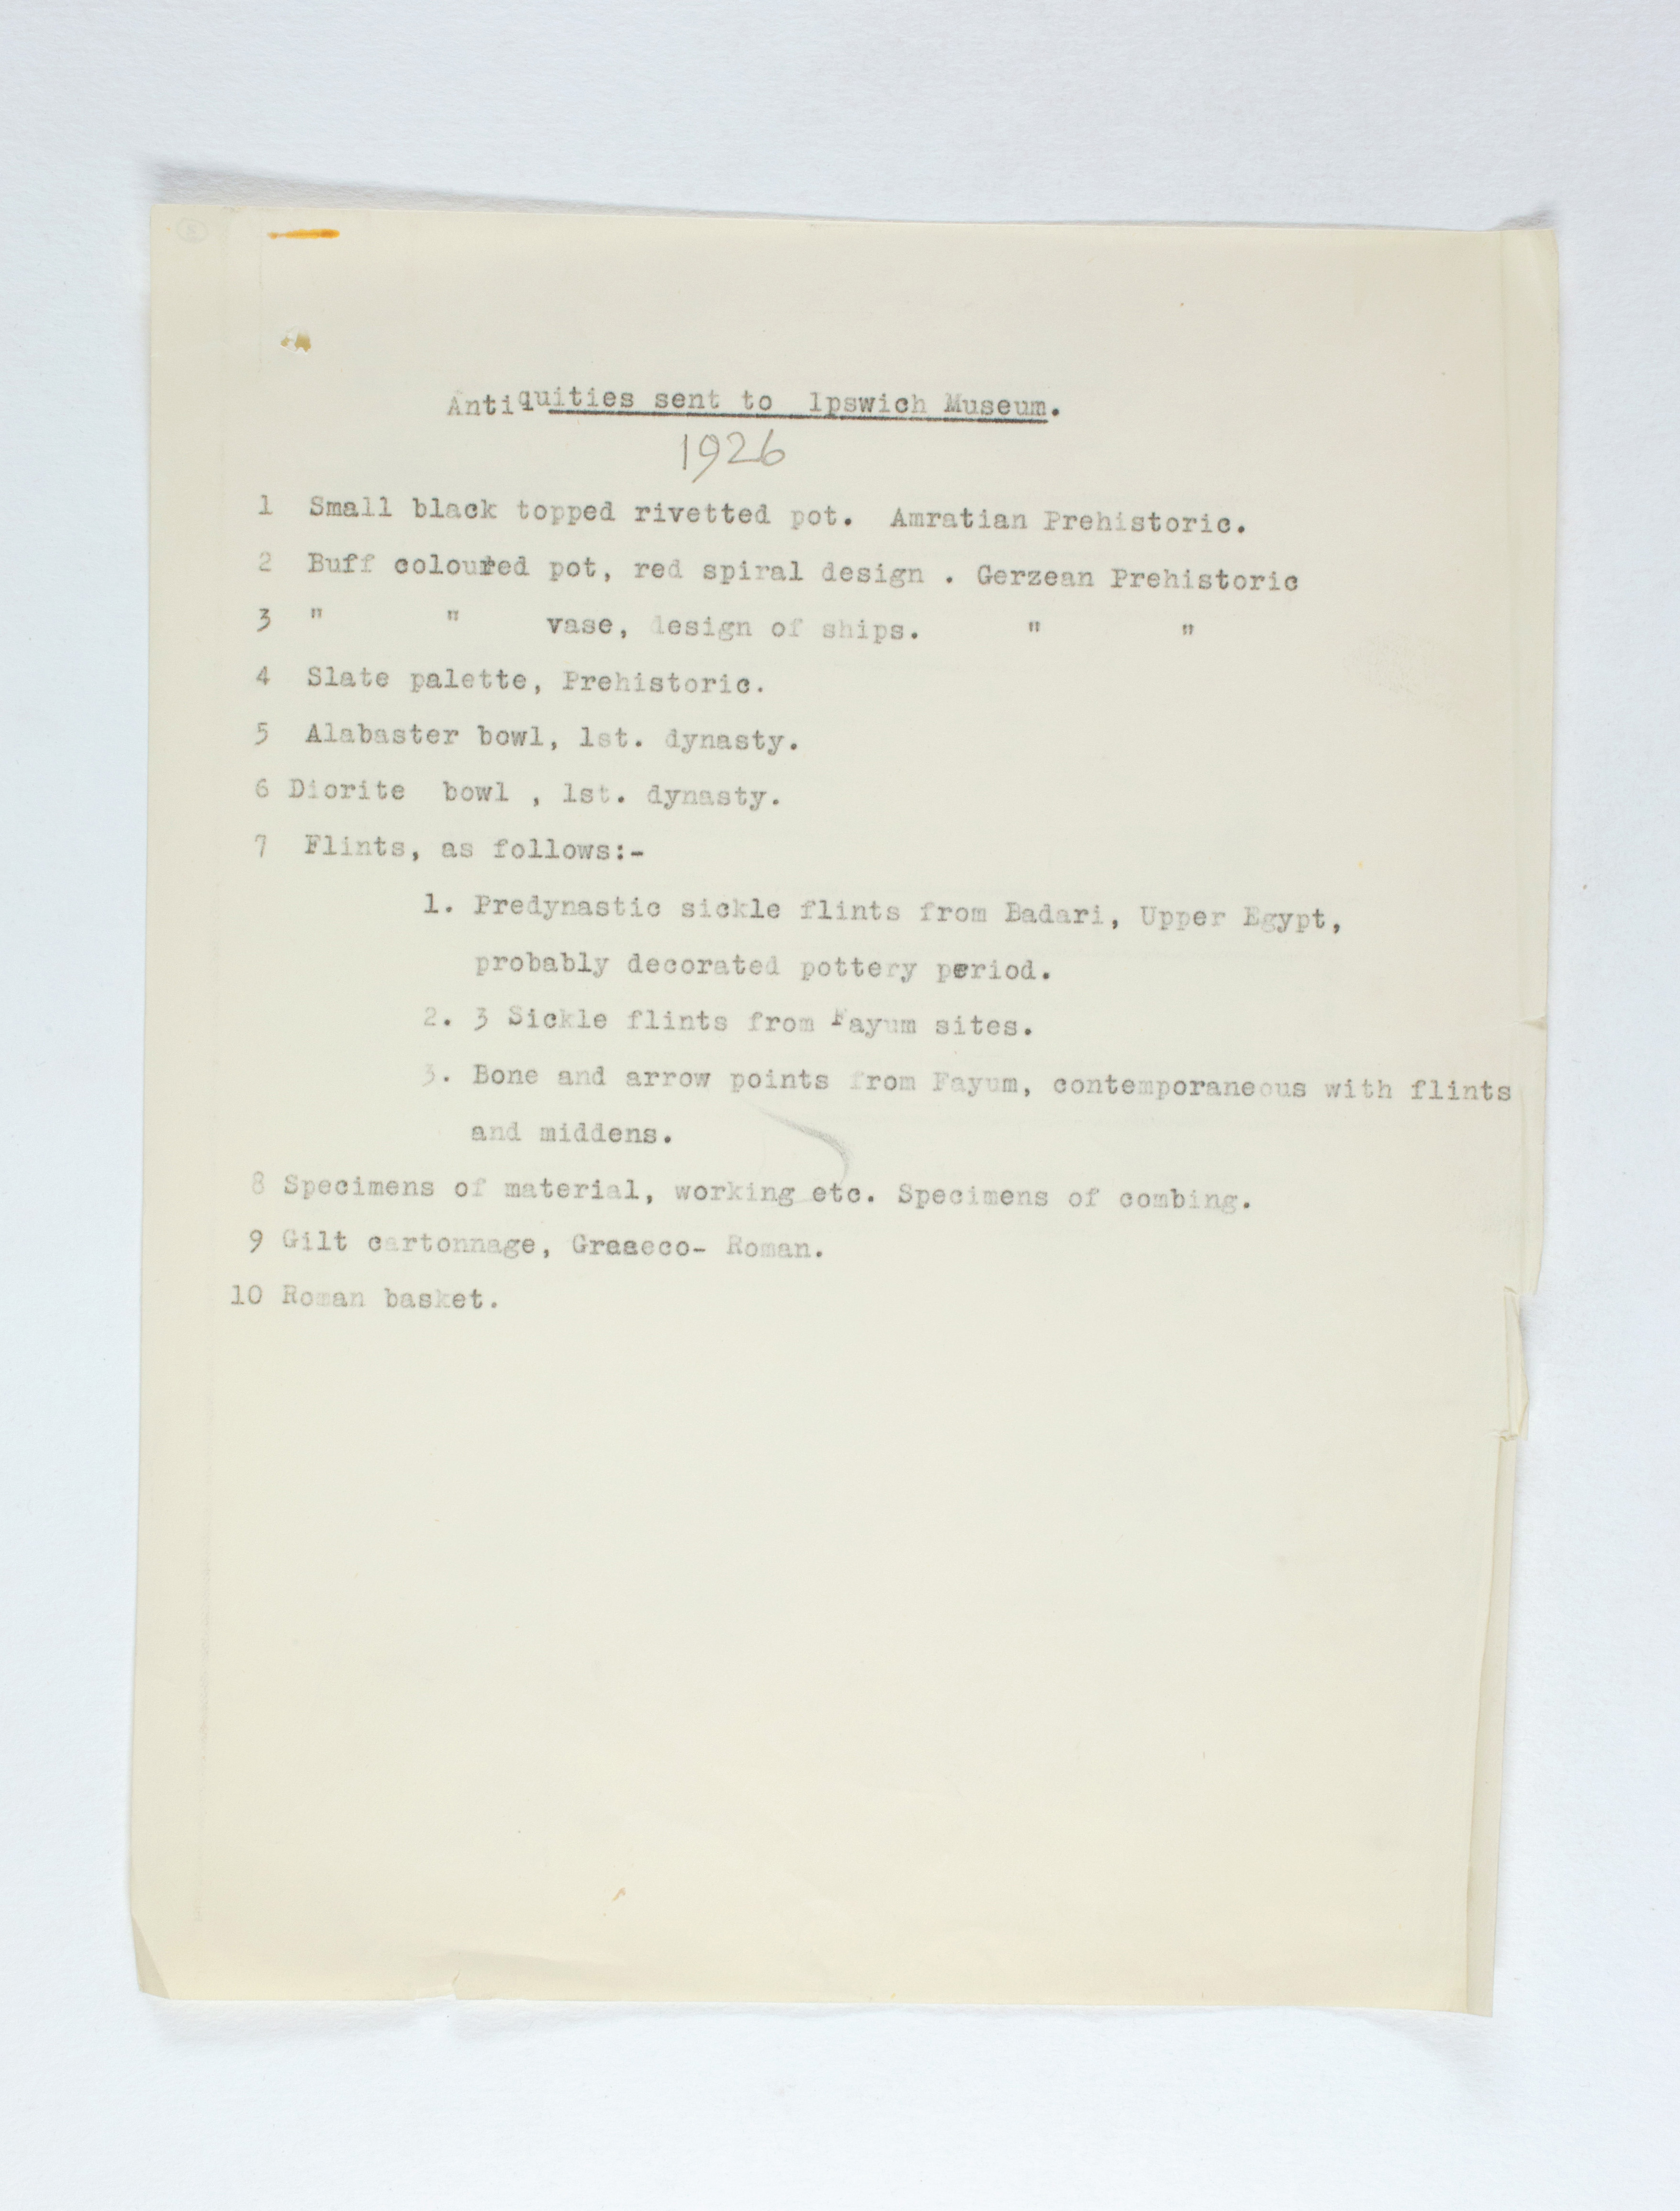 1925-26 Badari, Faiyum Individual institution list PMA/WFP1/D/29/3